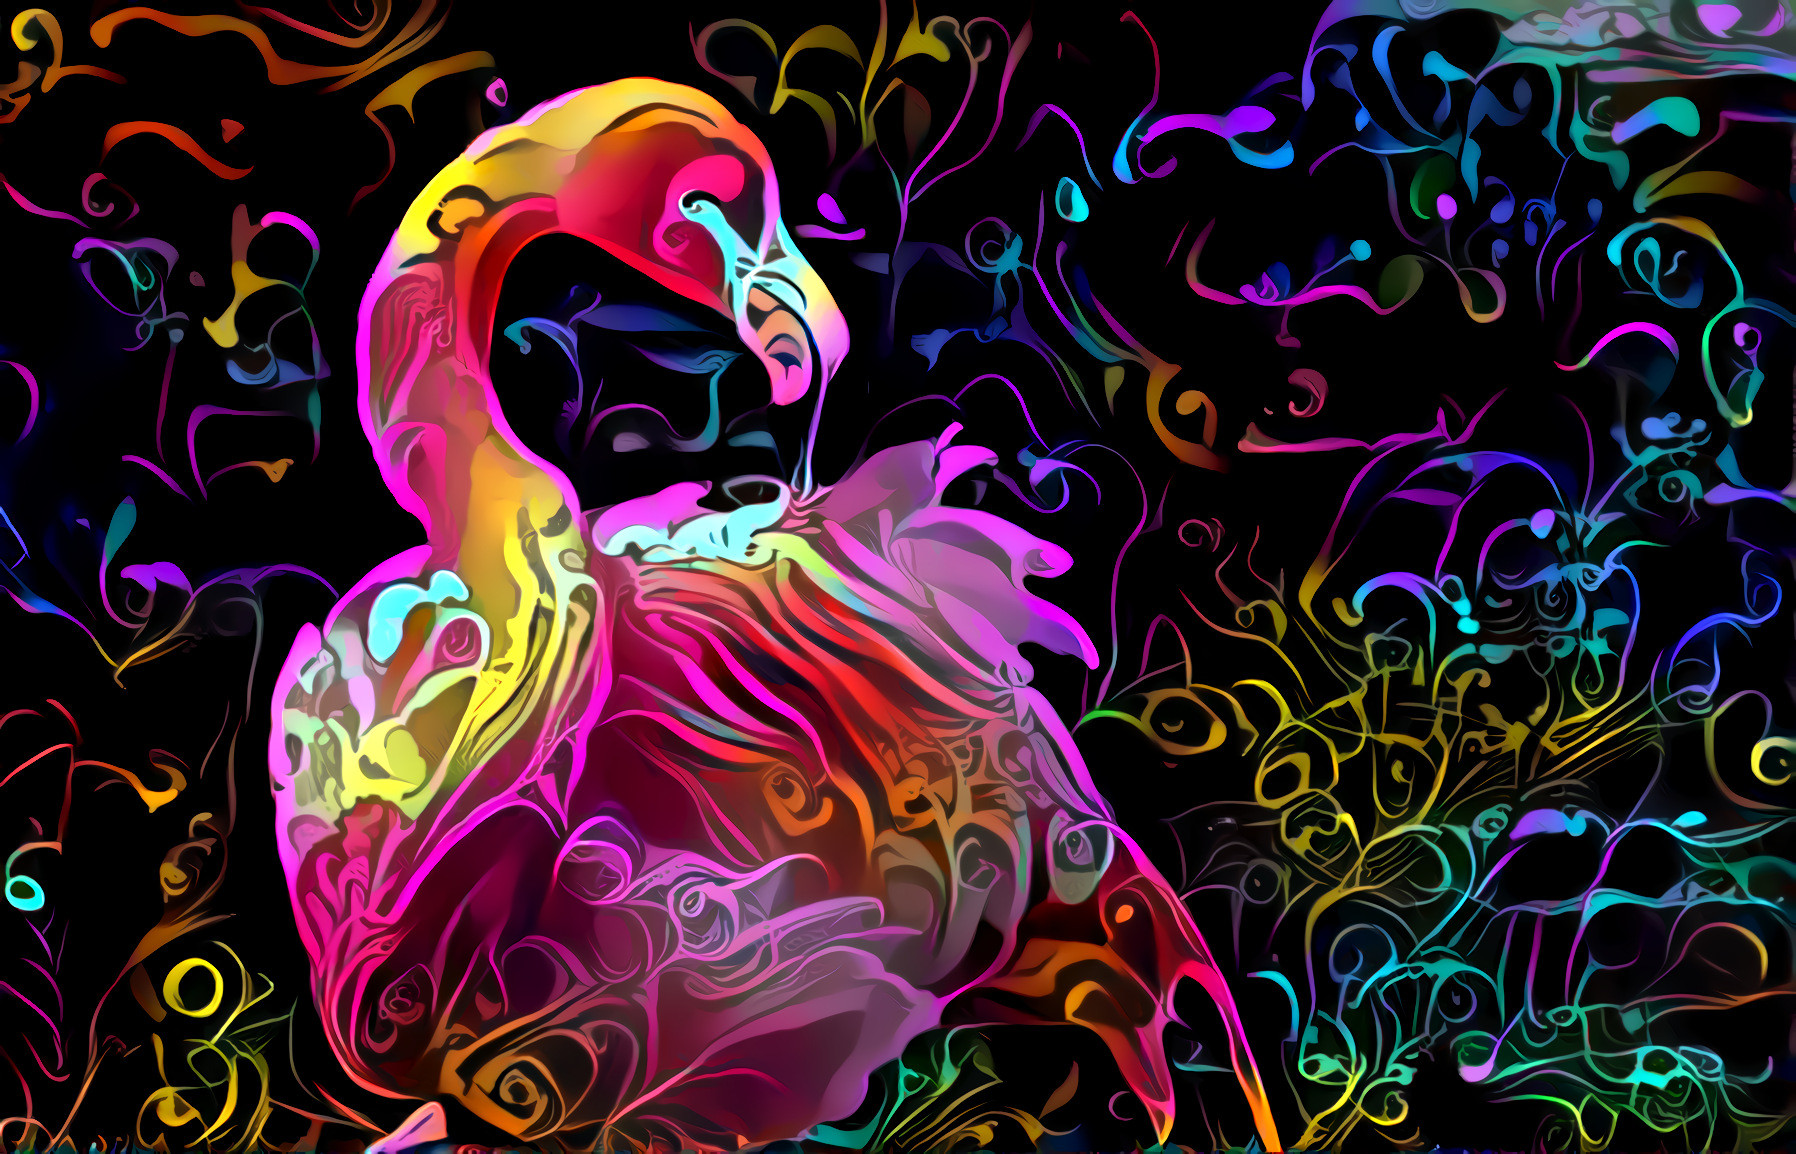 Flamenco Flamingo - style by Нинель Летова